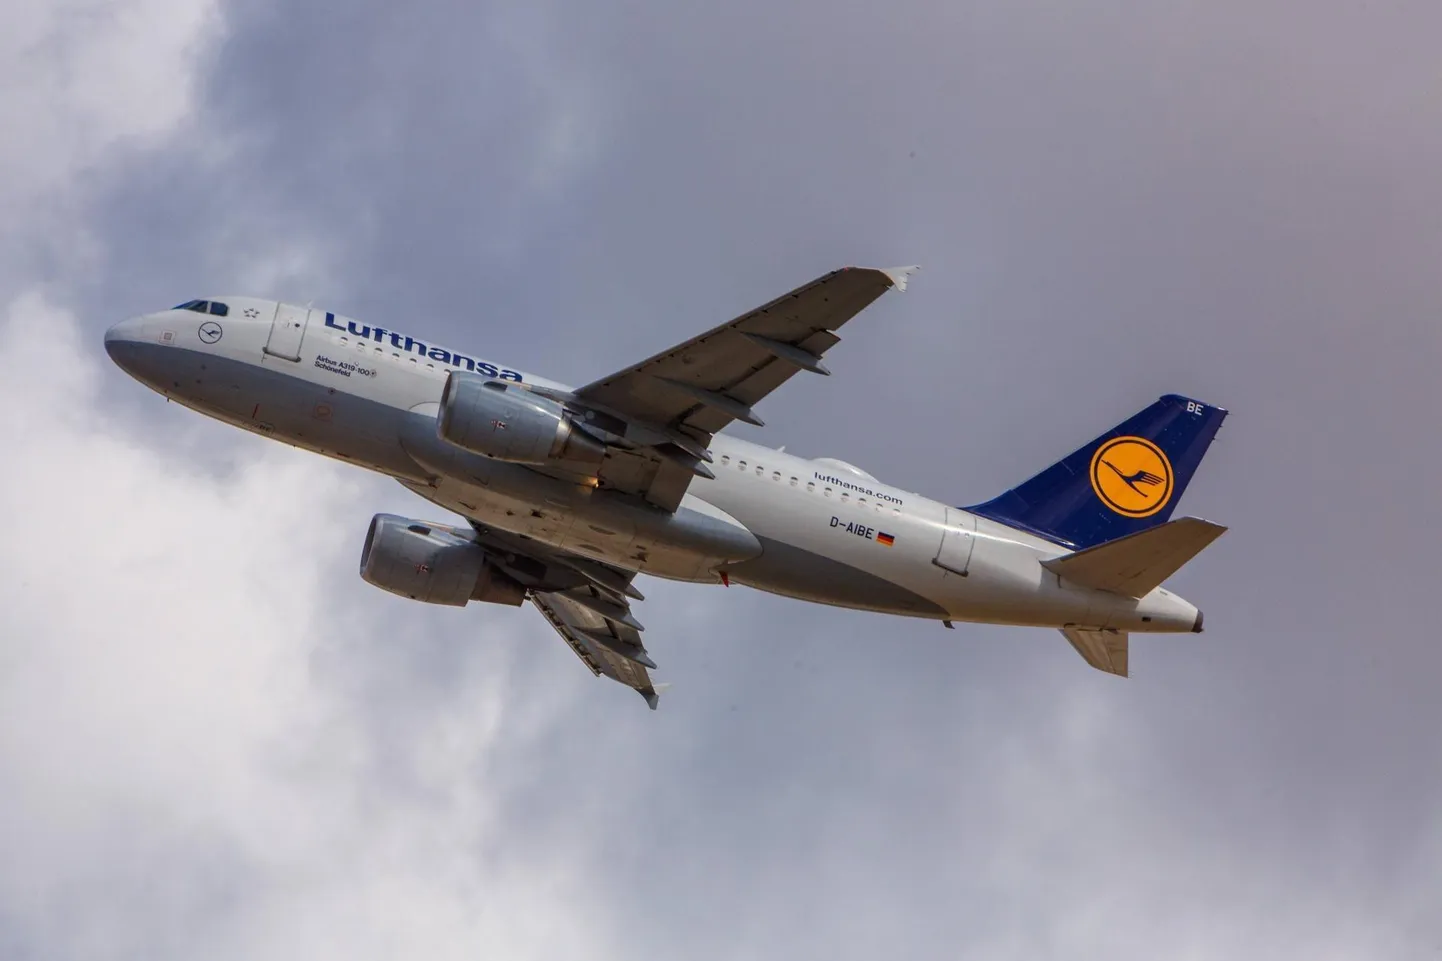 Lufthansa lennukitega Saksamaalt ilmselt sel aastal enam Lõuna-Aafrika Vabariiki ei saa.